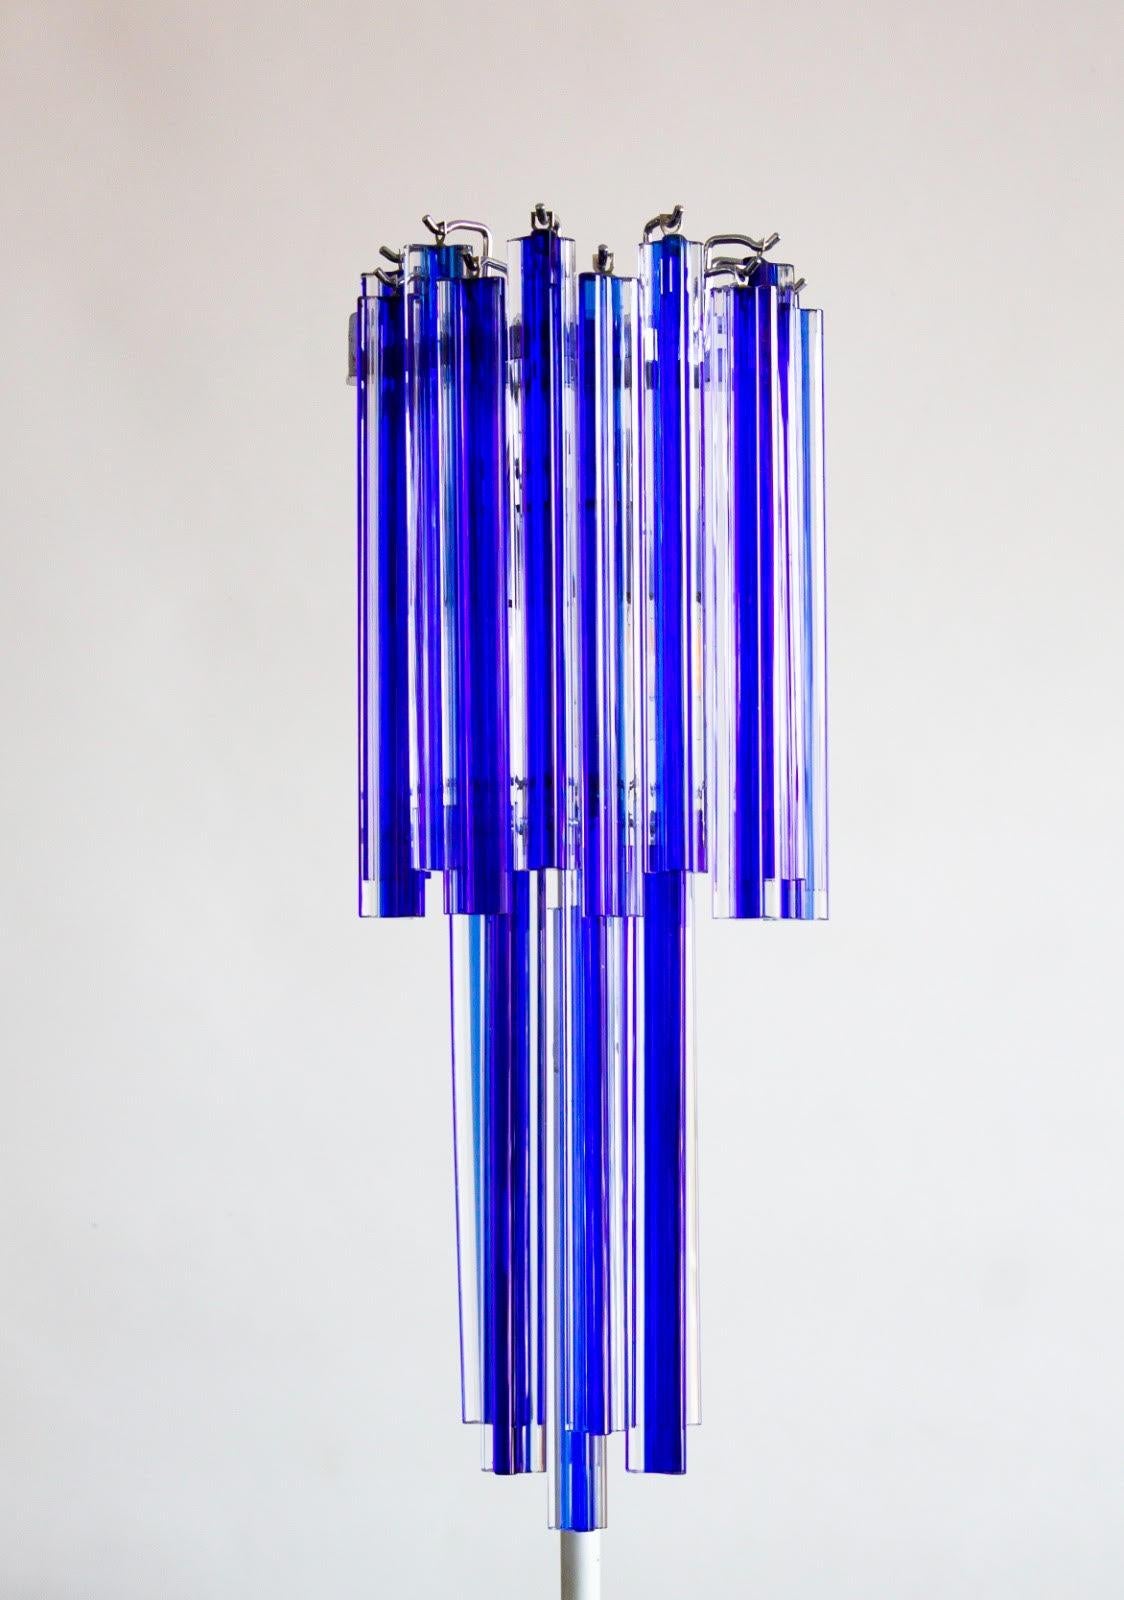 Applique bleue en verre soufflé de Murano Giovanni Dalla Fina, 1990
Il s'agit d'une superbe applique entièrement réalisée à la main en verre soufflé de Murano, conçue et fabriquée par l'artiste et designer italien Giovanni Dalla Fina. L'applique